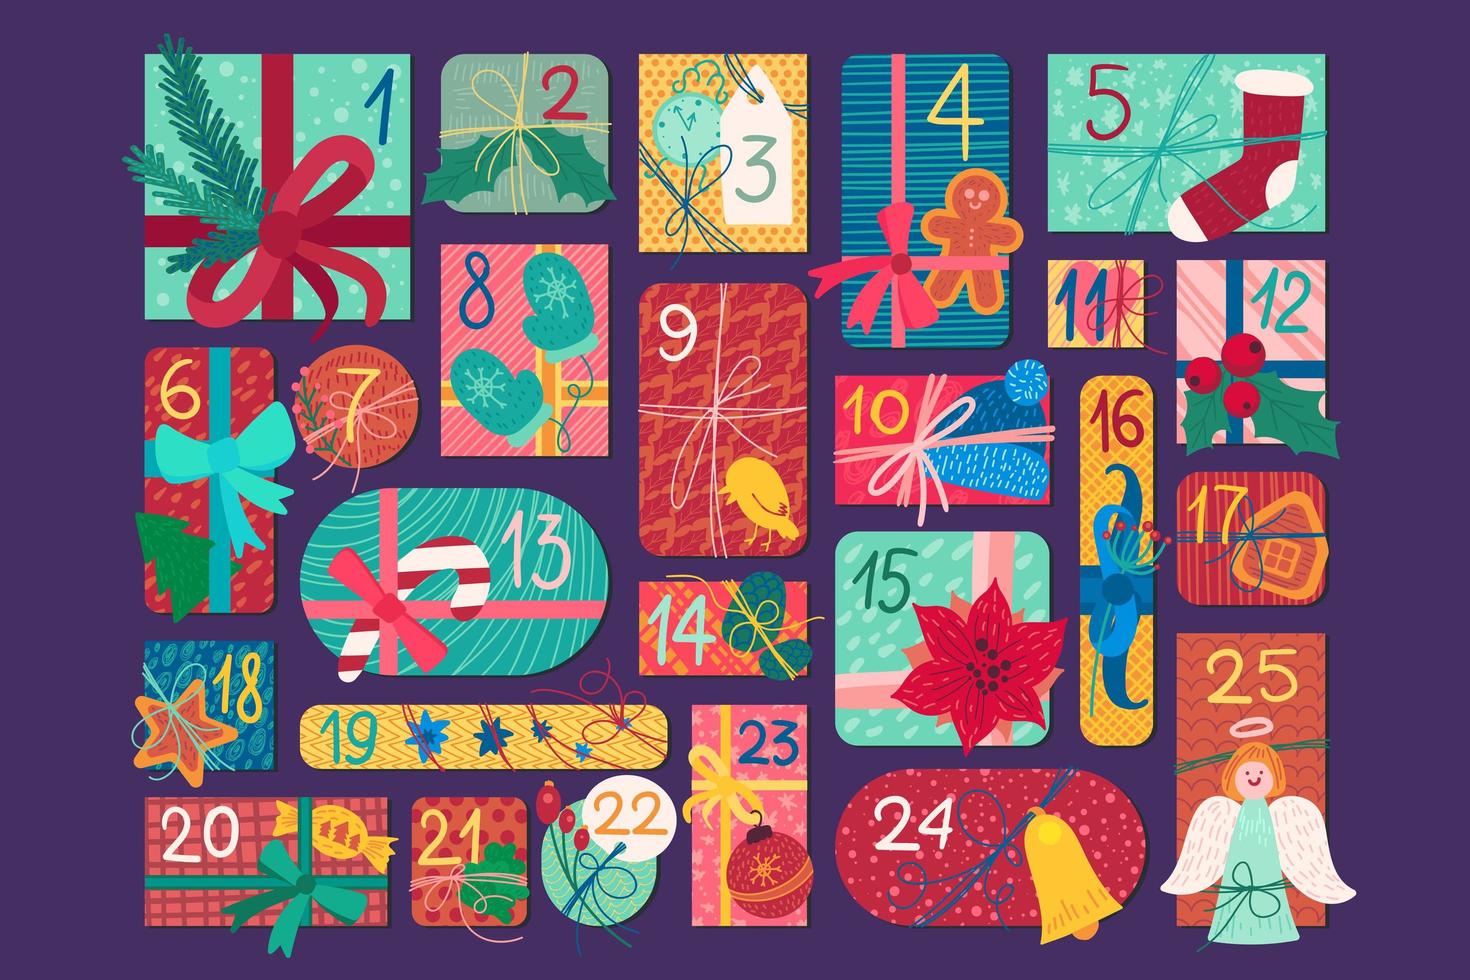 flache Vektorillustration des festlichen Adventskalenders Weihnachten vektor